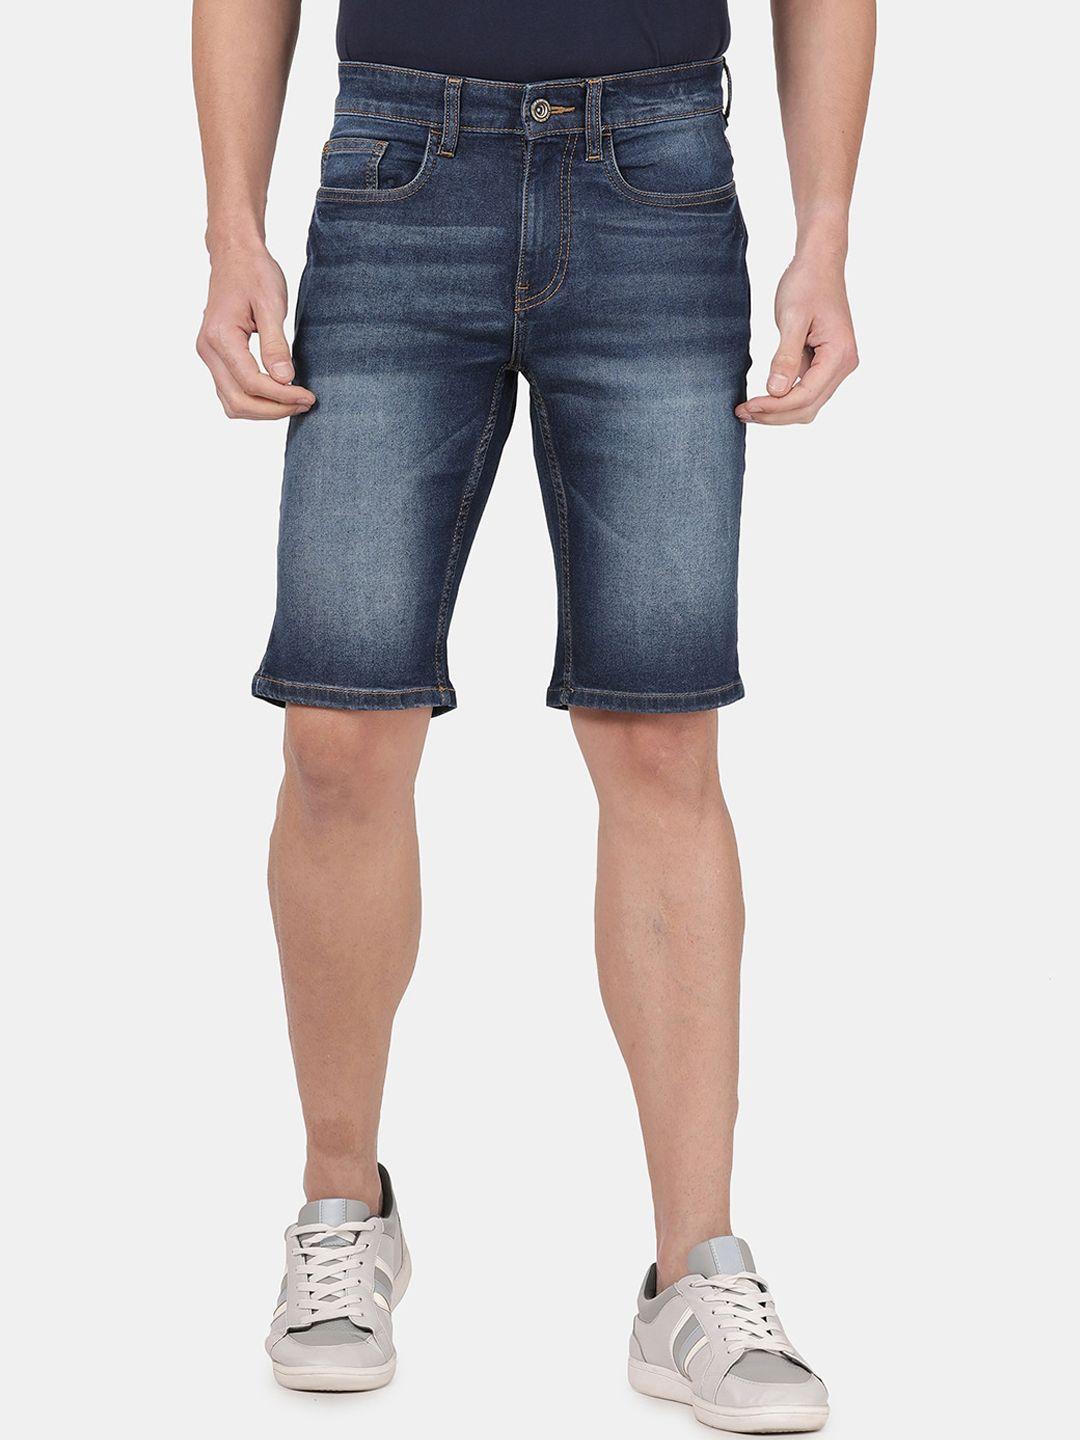 llak-jeans-men-washed-slim-fit-denim-shorts